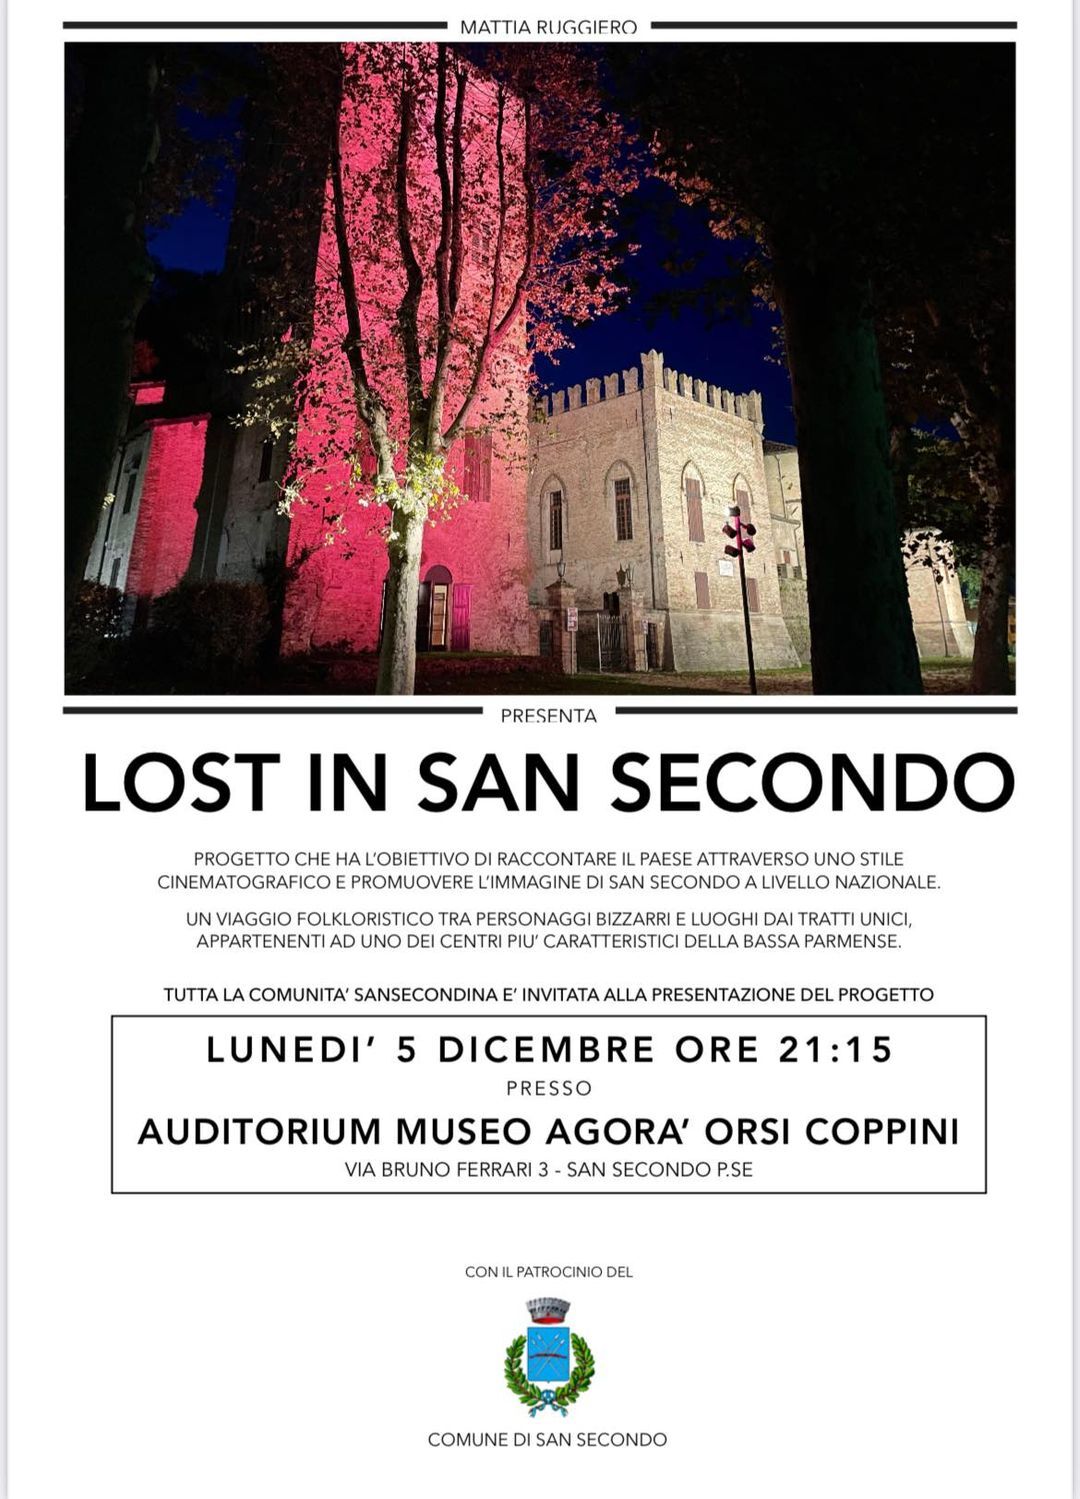 Lost in San Secondo